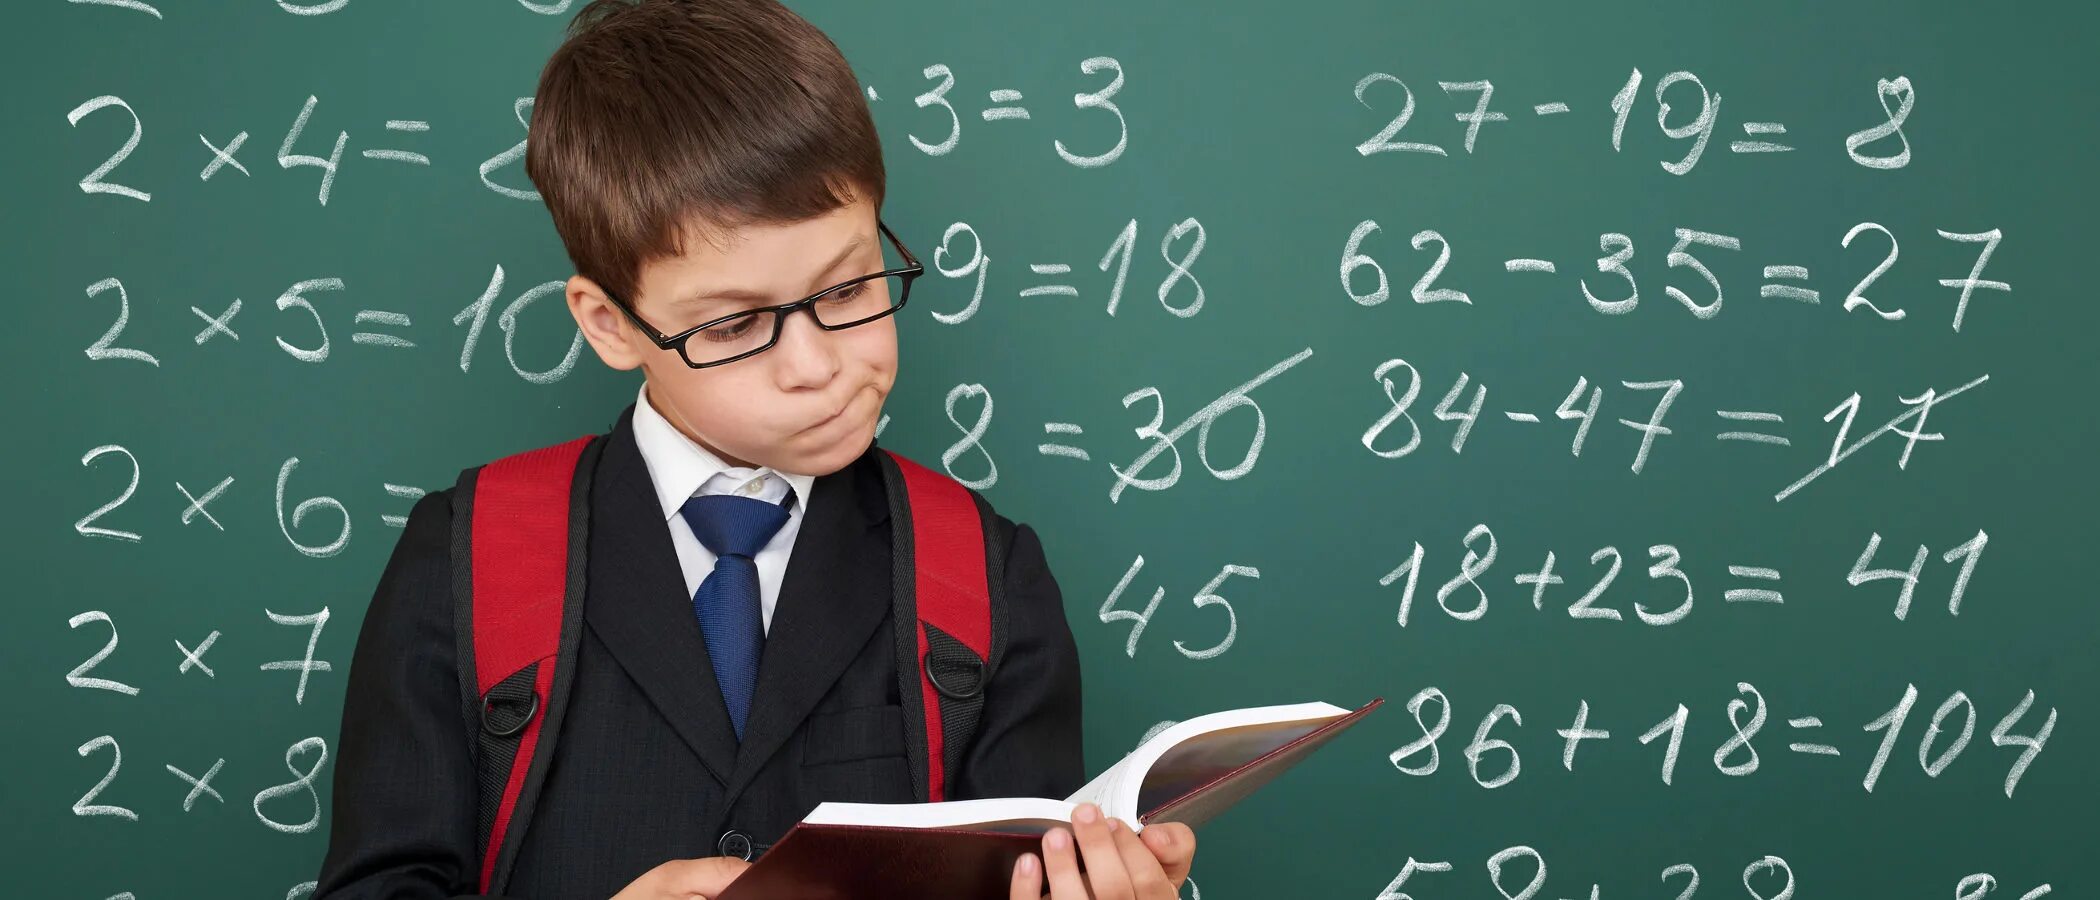 Математика для школьников. Школьники математики. Математические фото. Ребенок учит математику.